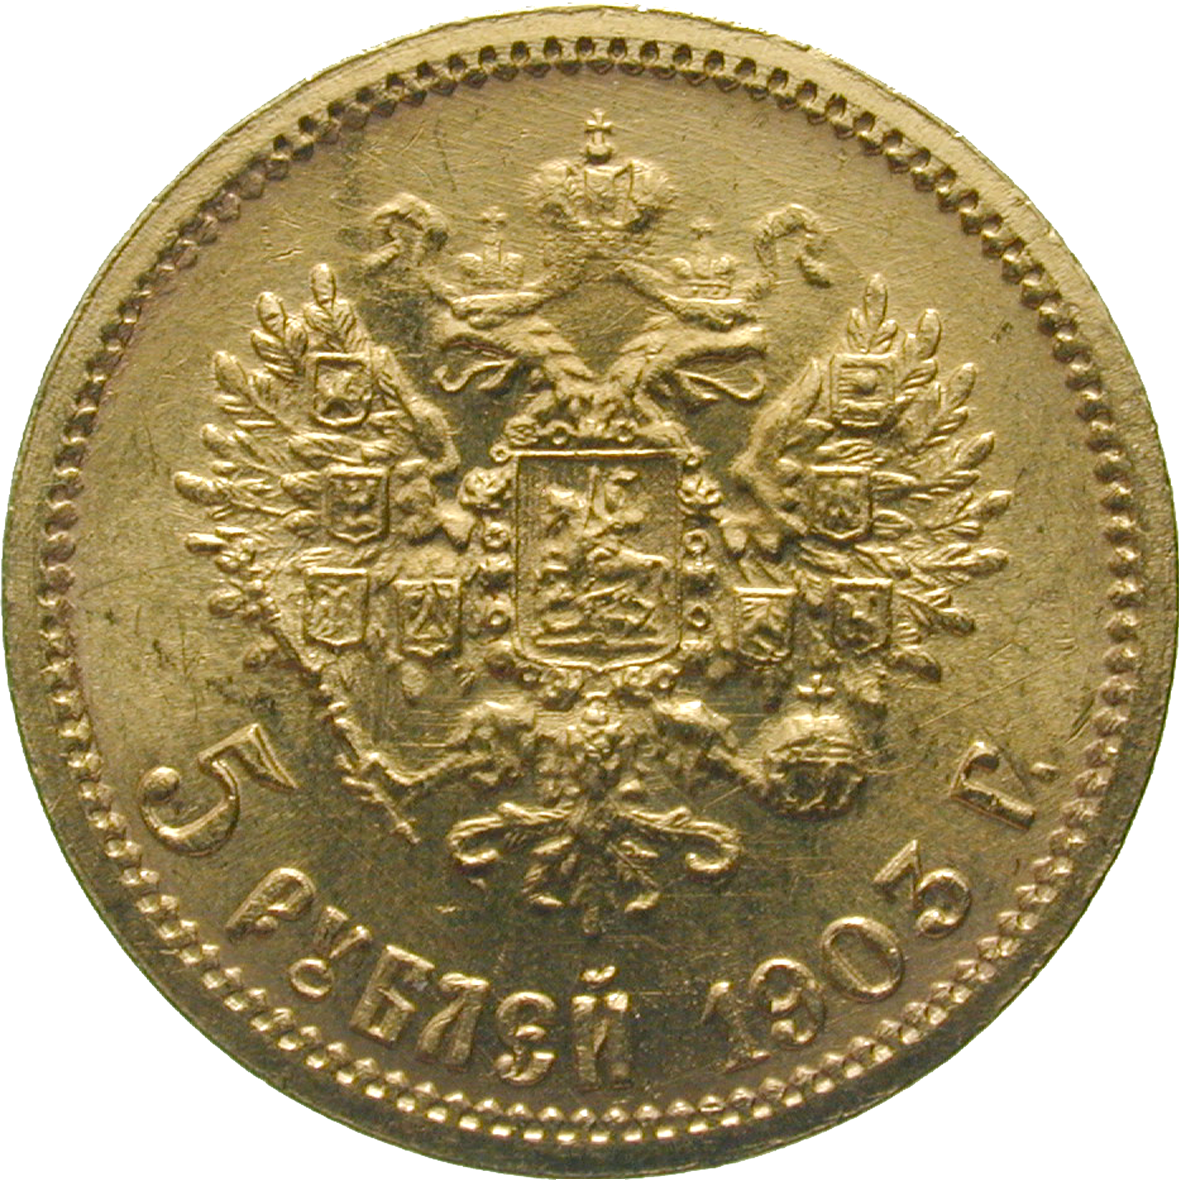 Zarenreich Russland, Nikolaus II., 5 Rubel 1903 (reverse)